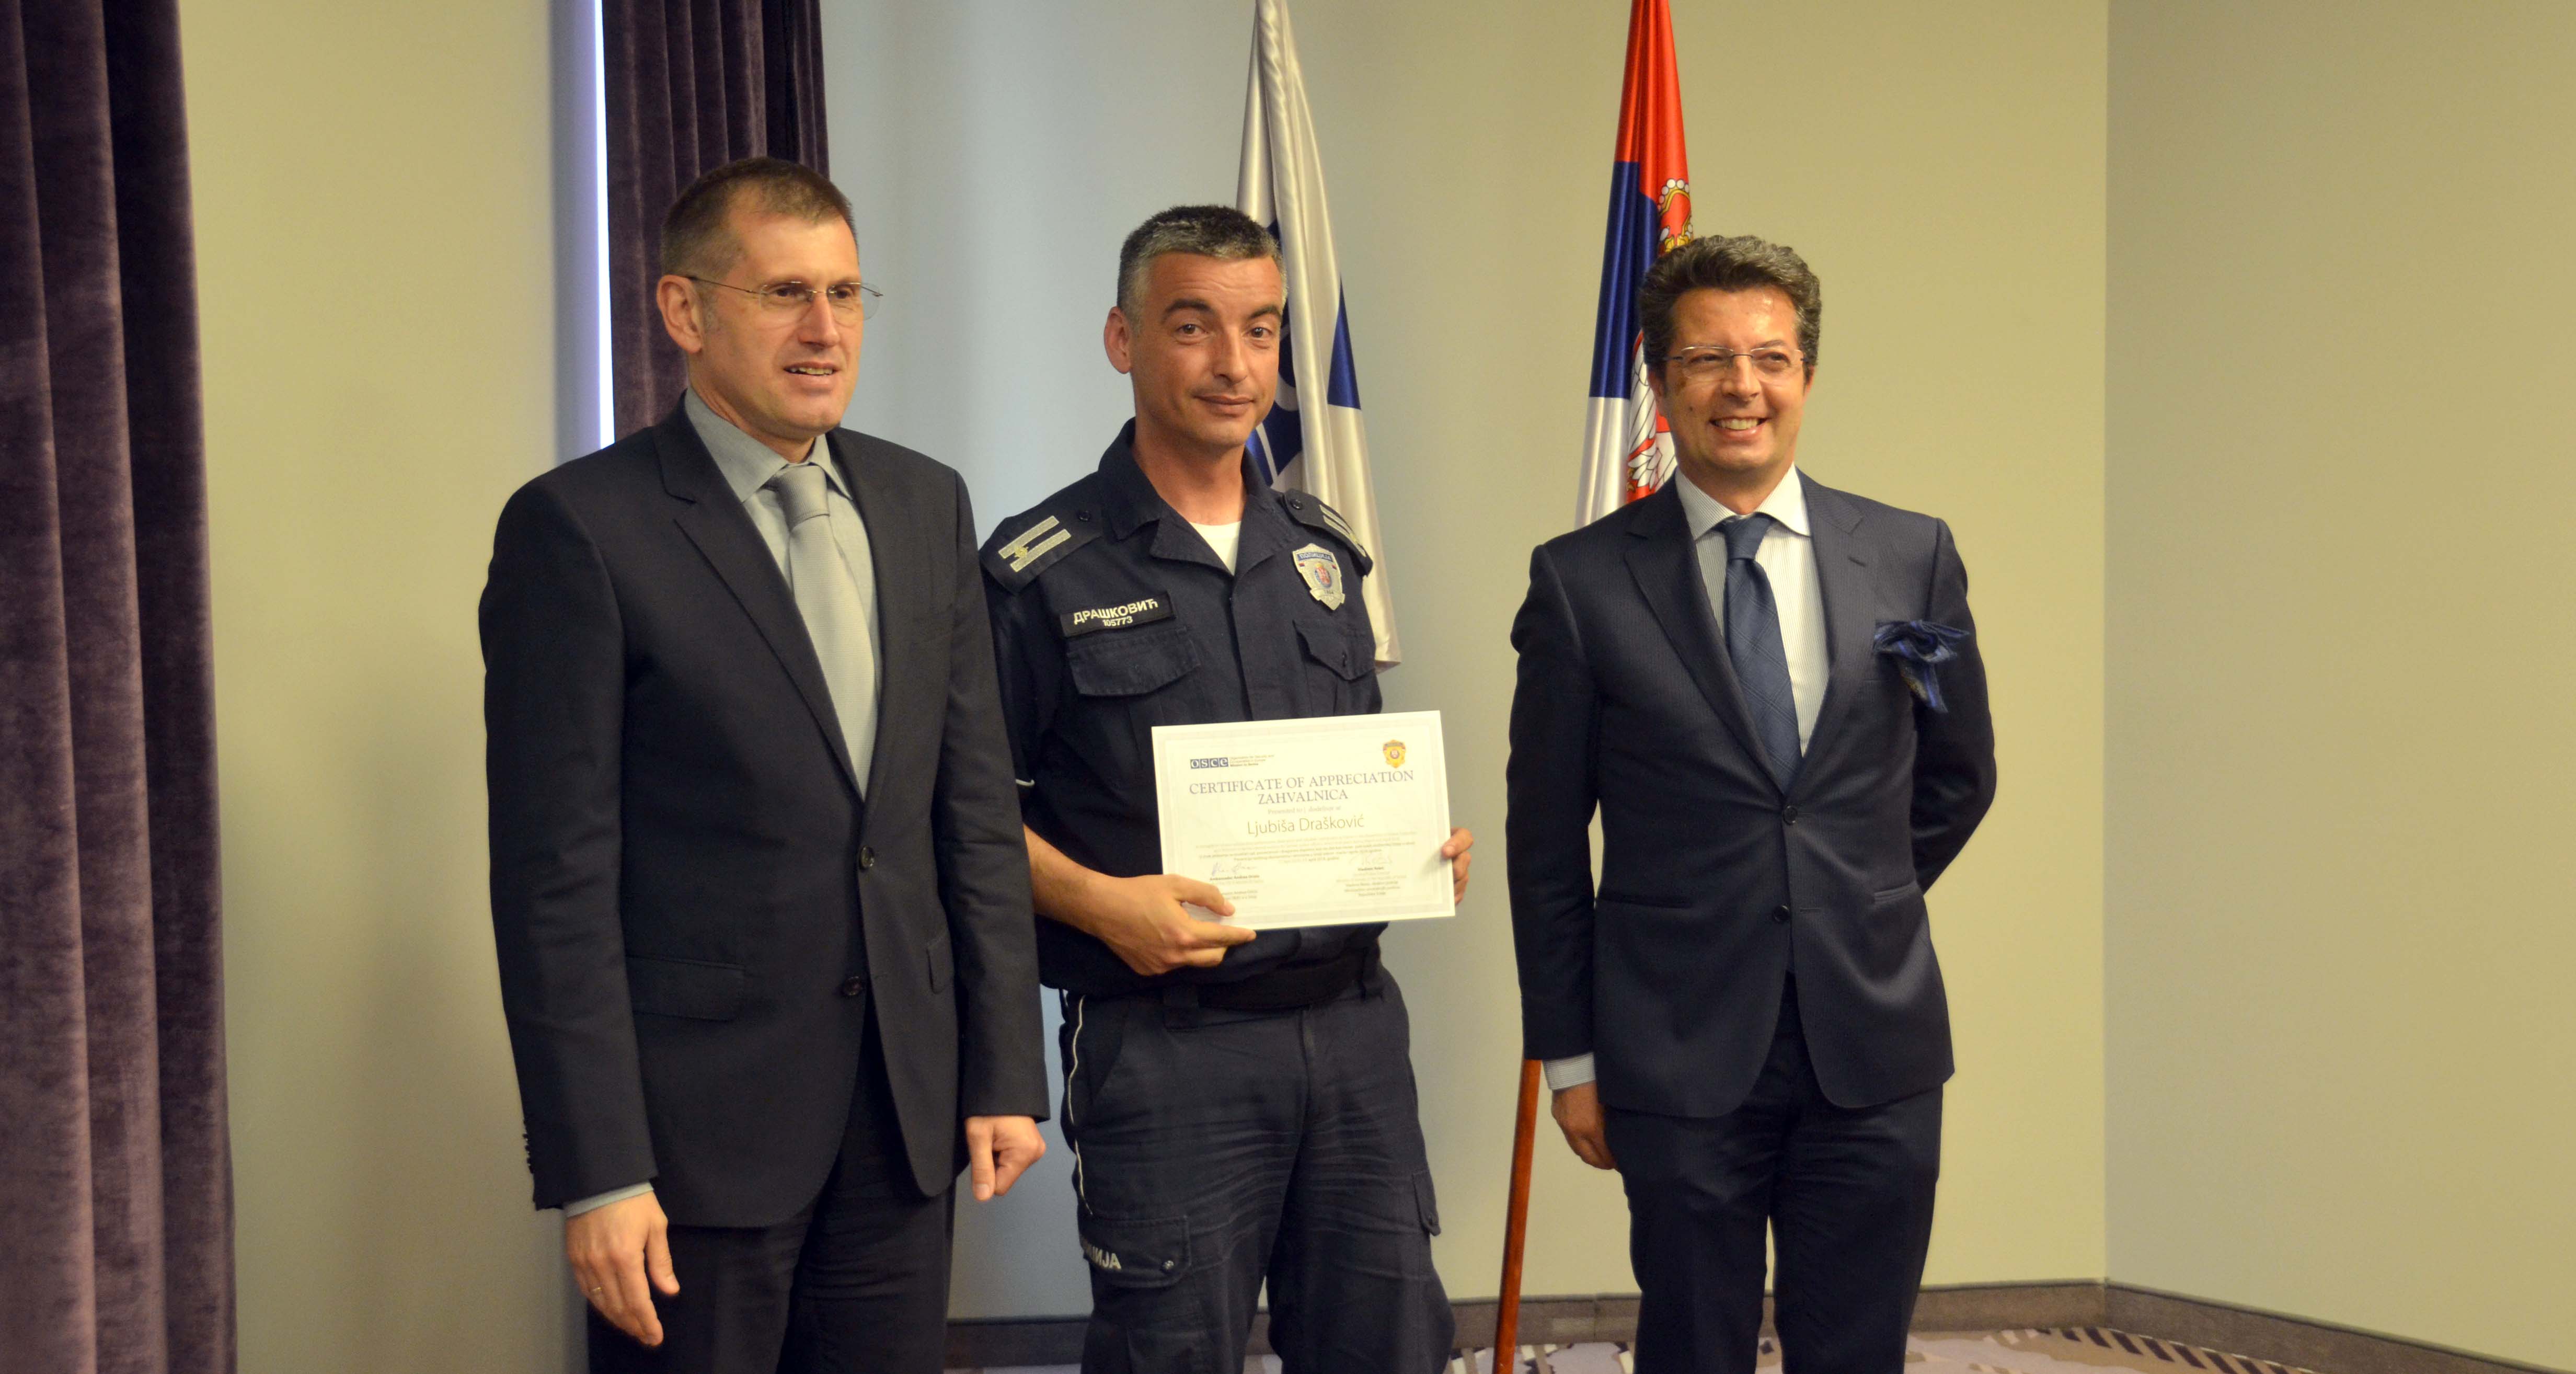 Завршени тренинзи полицијских службеника у оквиру пројекта „Подршка превенције насилног екстремизма и тероризма у Републици Србији“